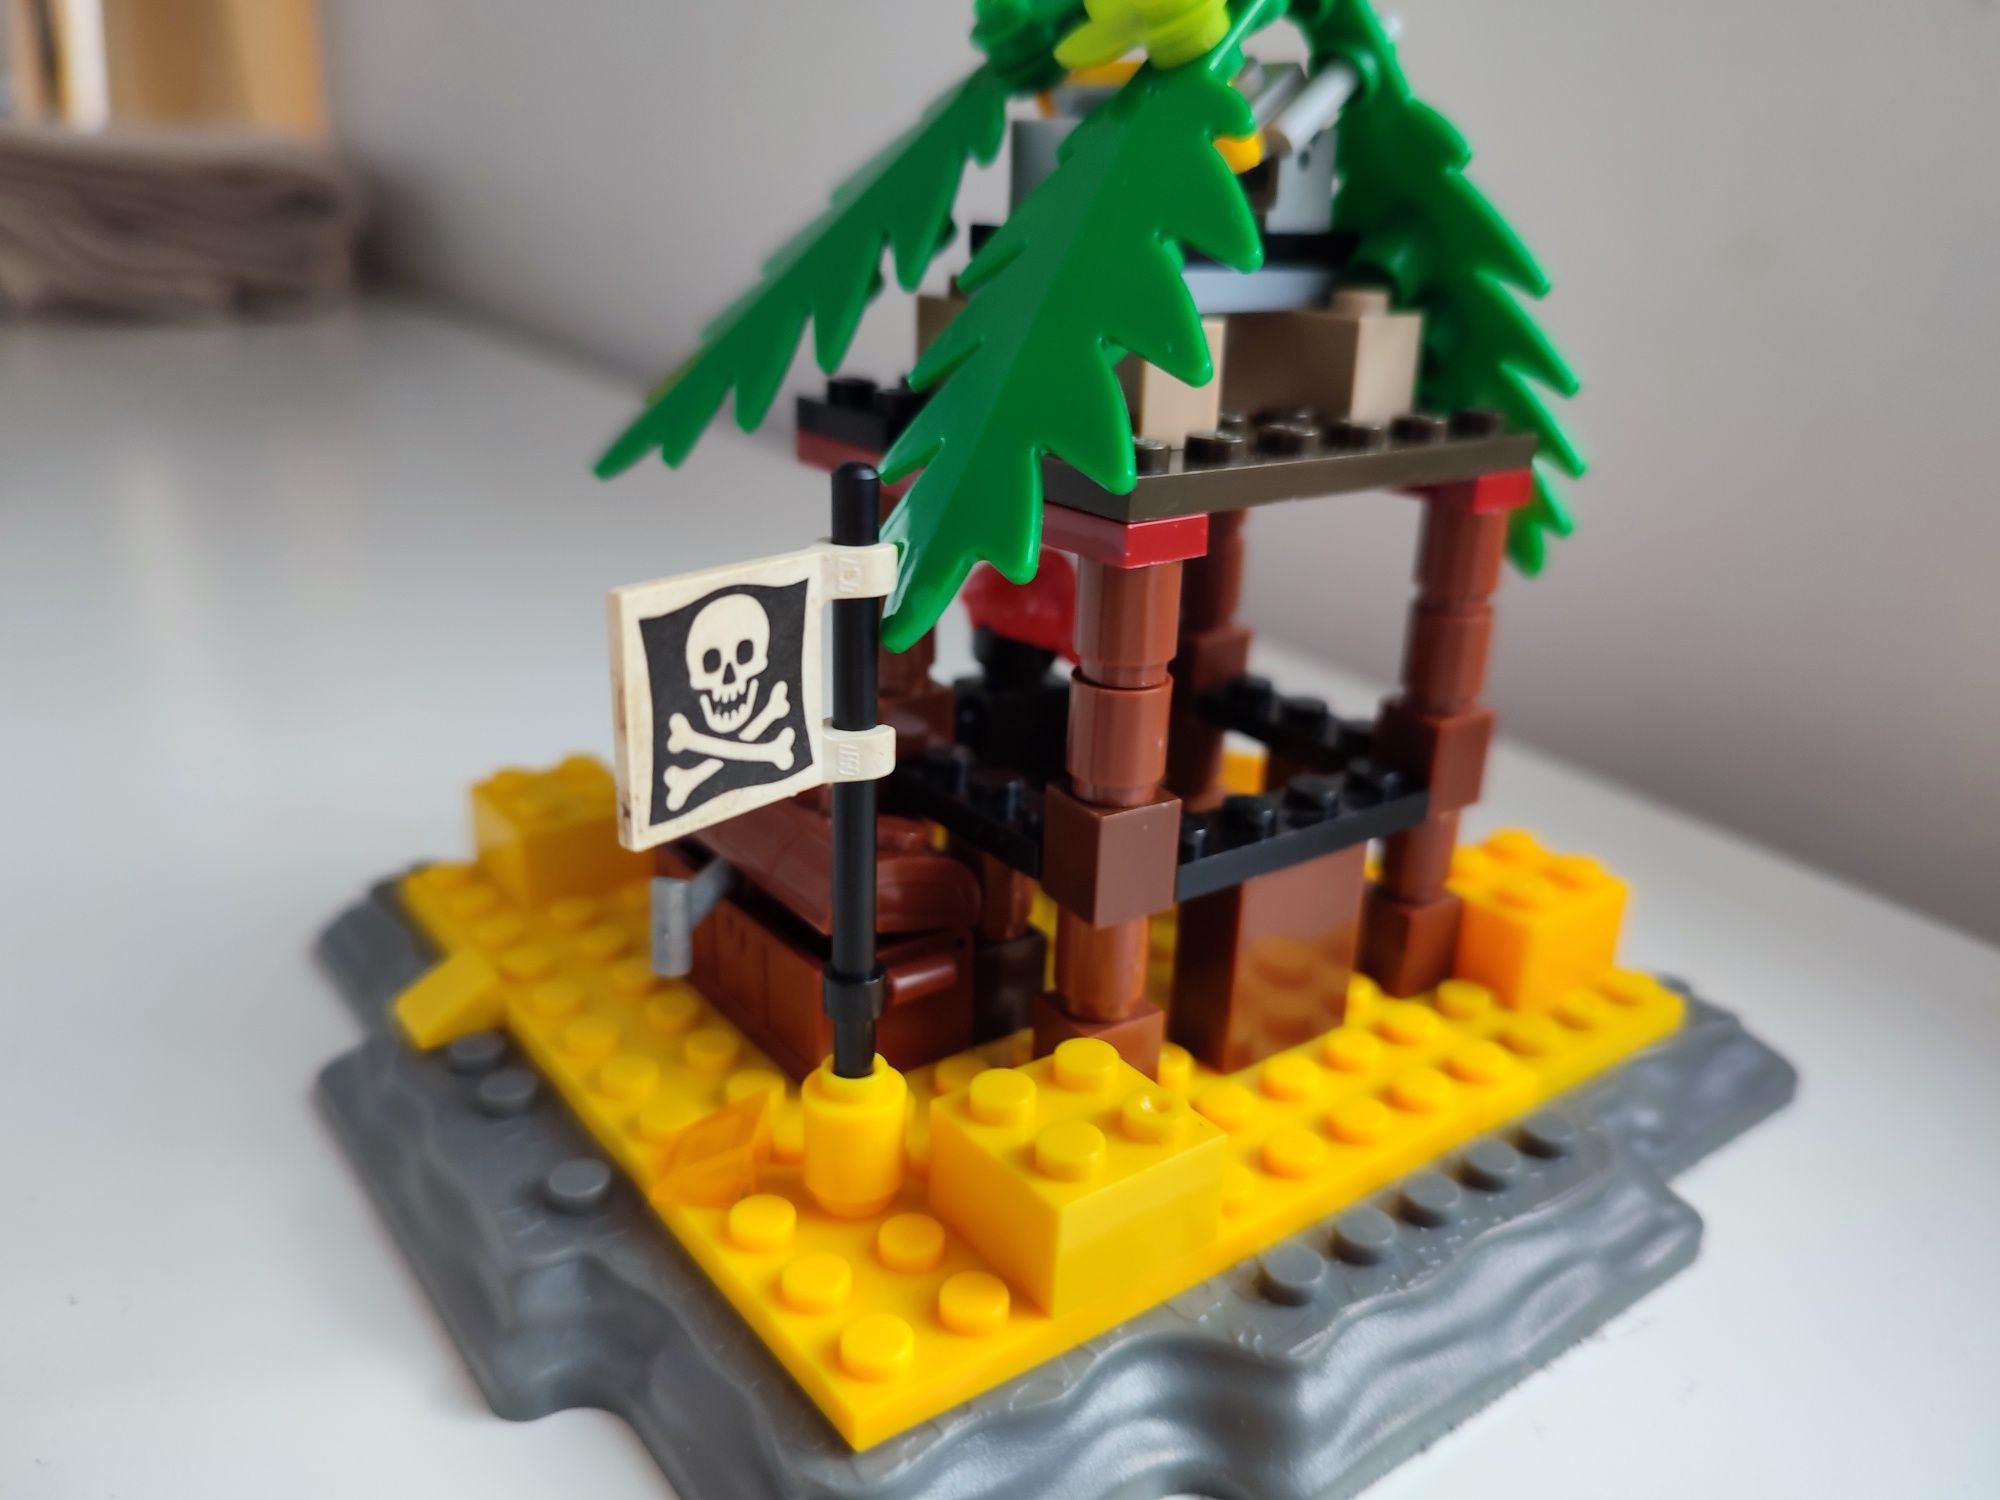 Klocki typu LEGO bezludna wyspa